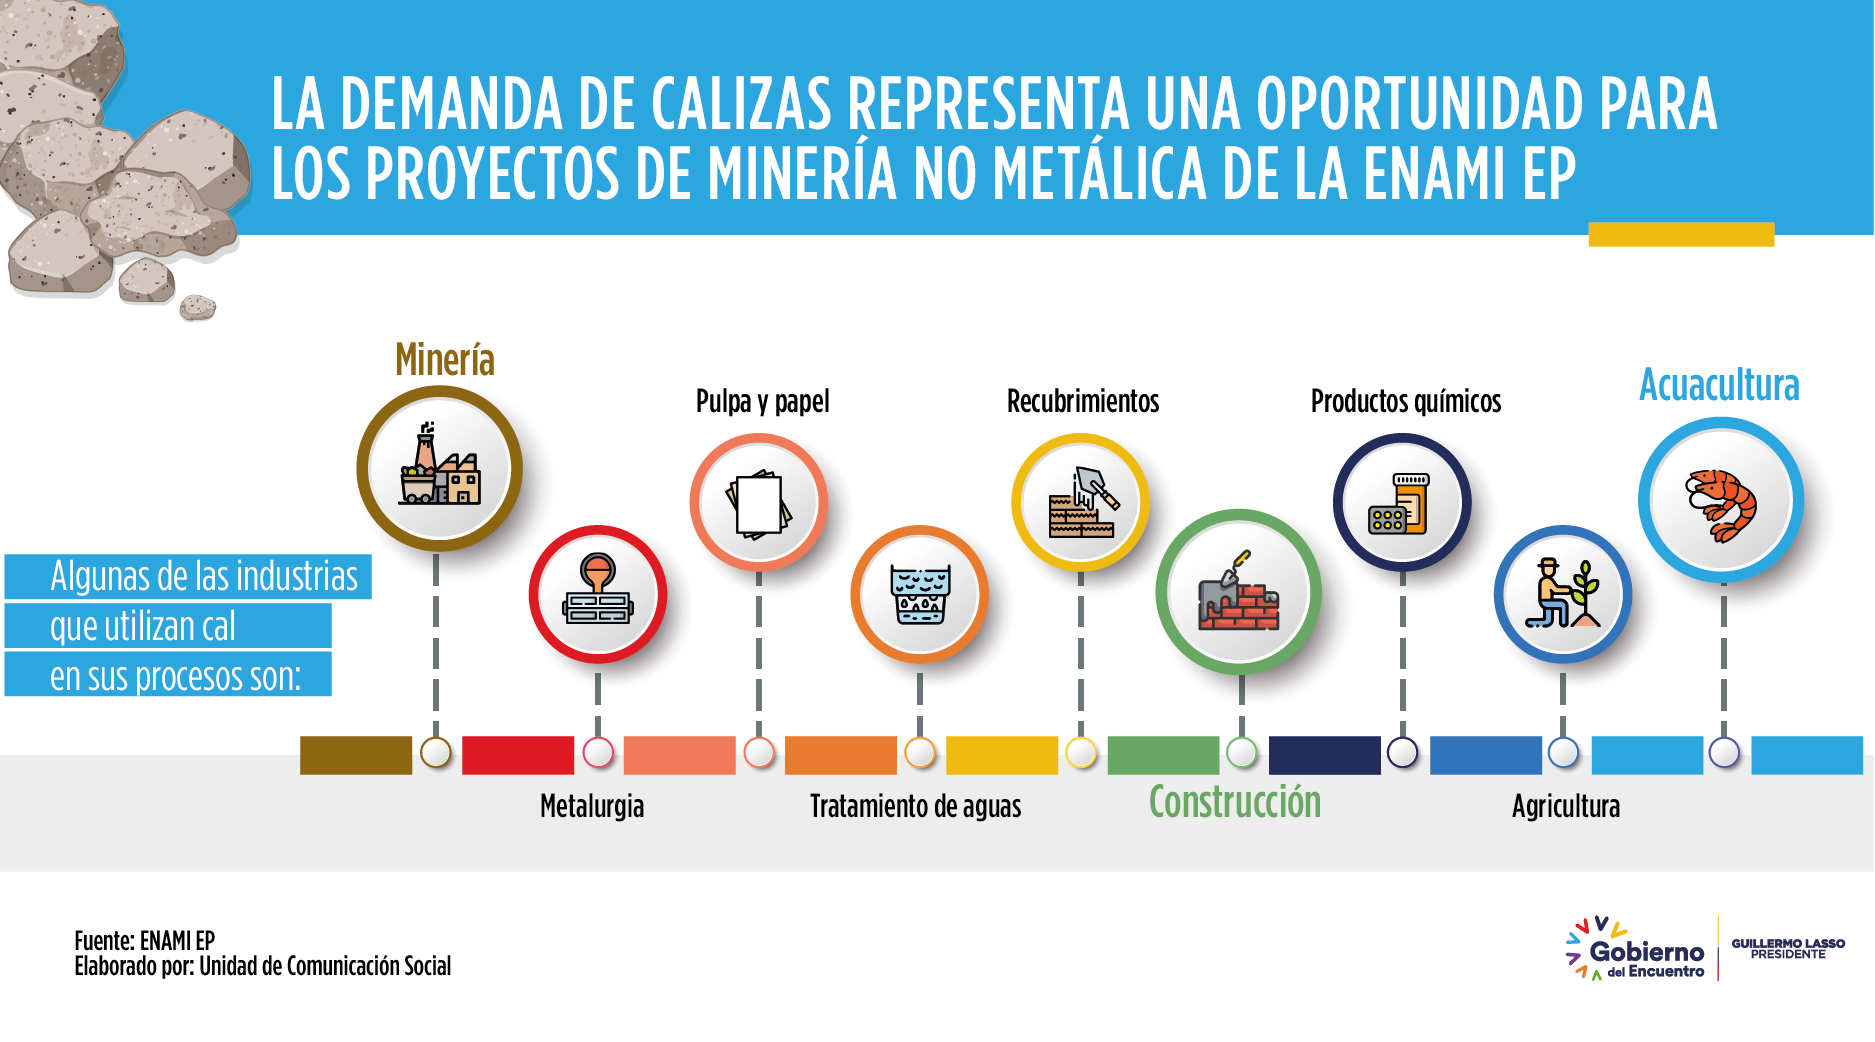 La demanda de calizas representa una oportunidad para los proyectos de minería no metálica de la ENAMI EP